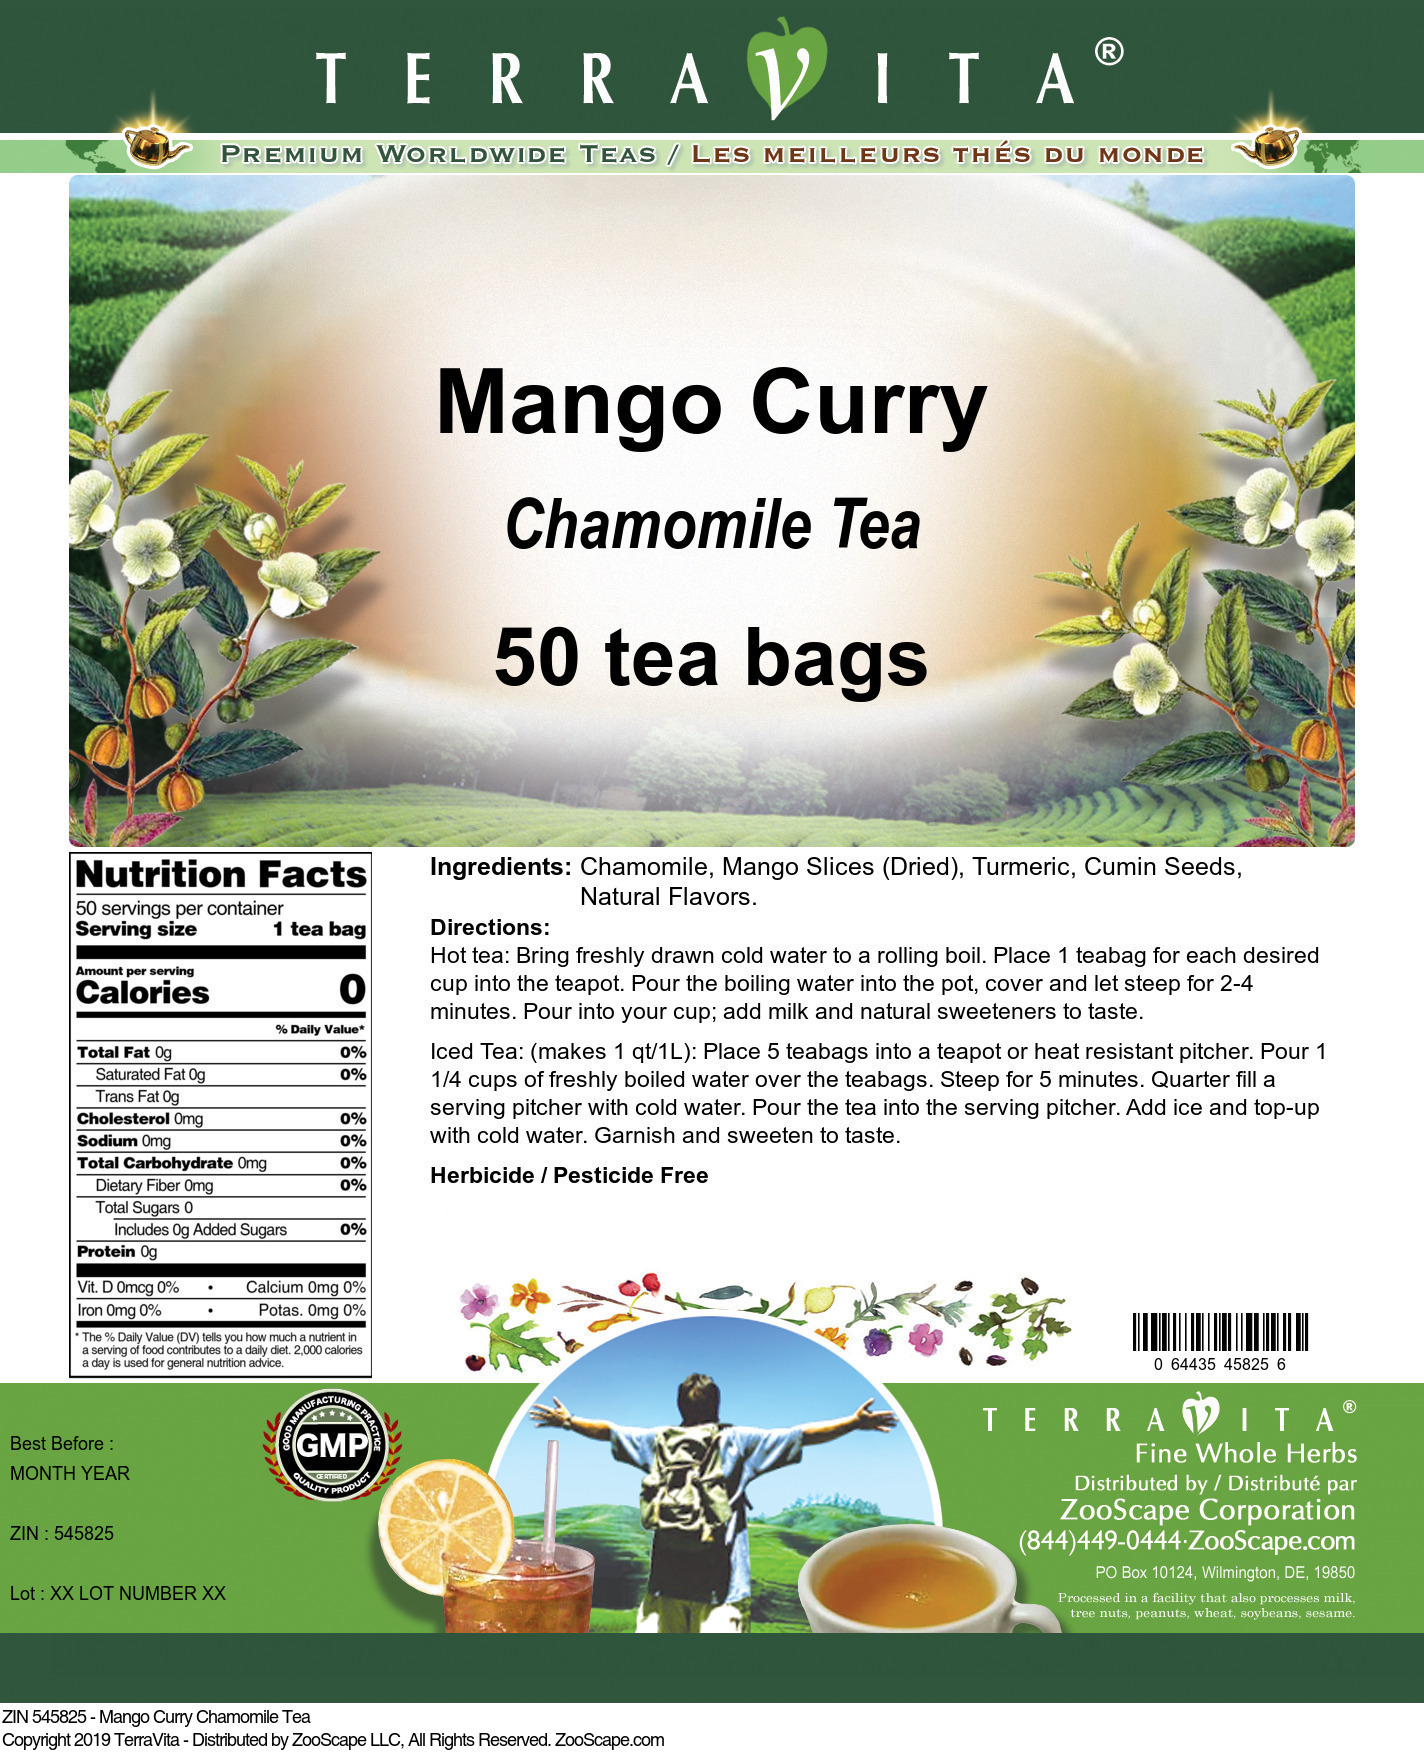 Mango Curry Chamomile Tea - Label